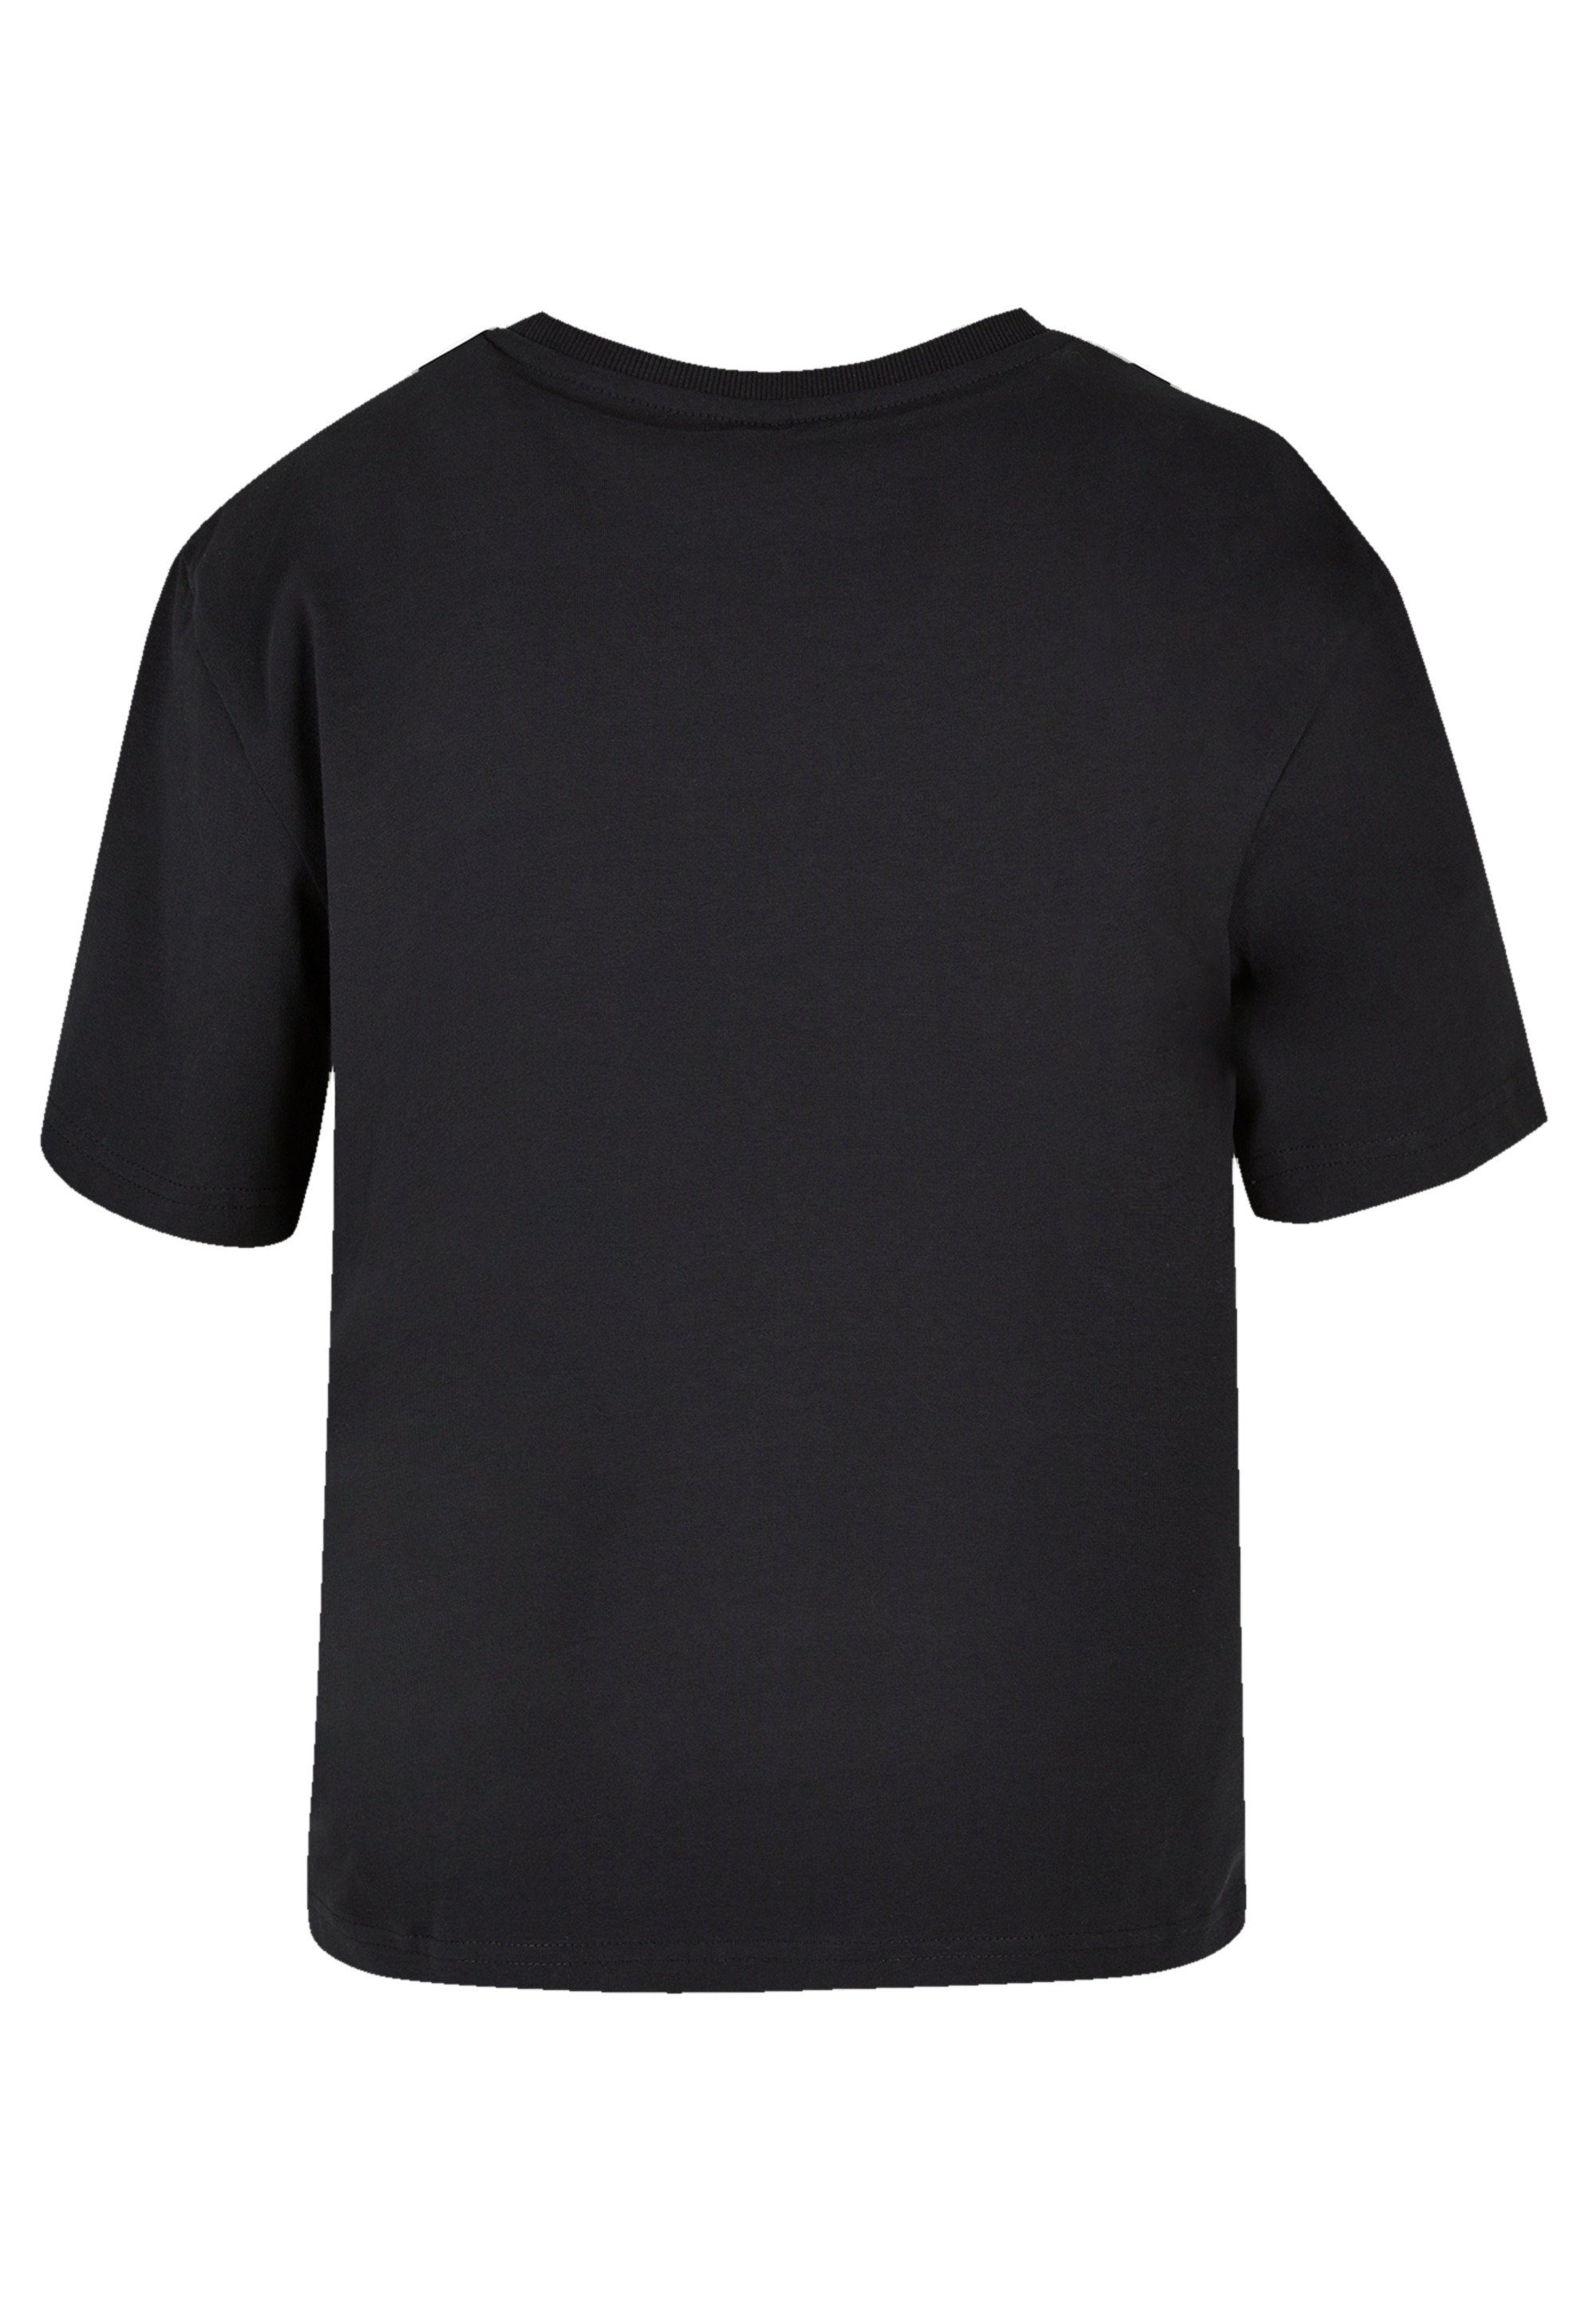 F4NT4STIC Qualität, Onward Disney Let vielseitig und Premium T-Shirt kombinierbar Komfortabel